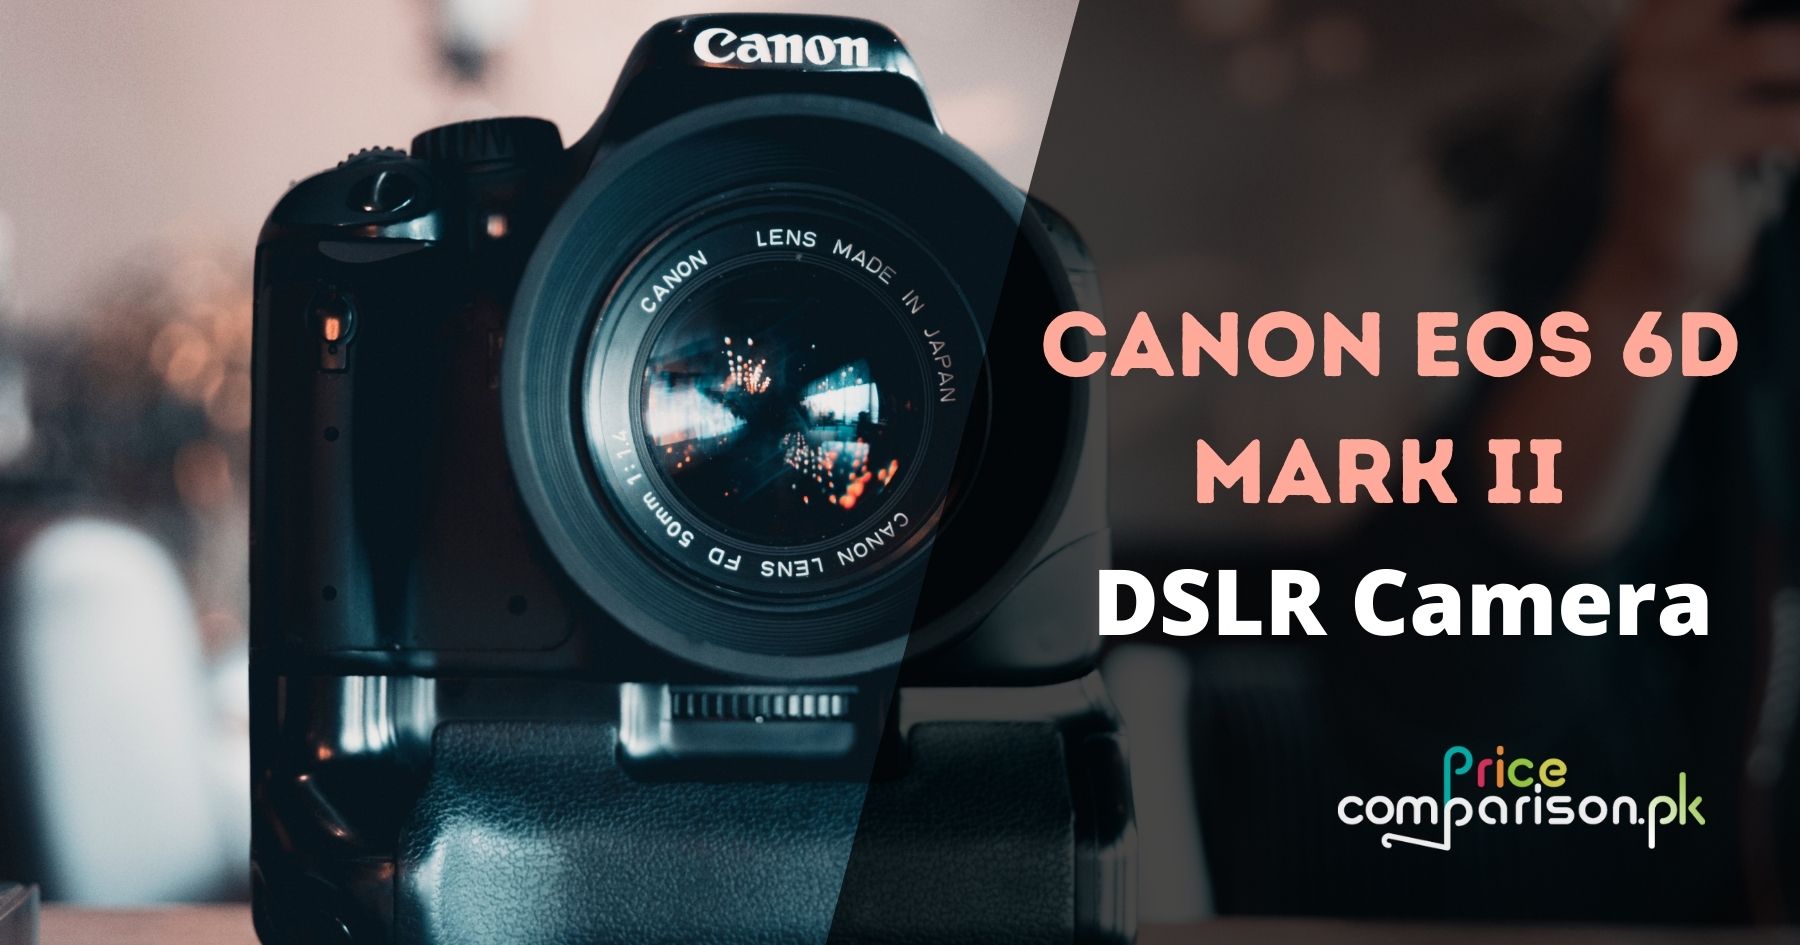 Canon EOS 6D Mark II Best DSLR Camera in Pakistan